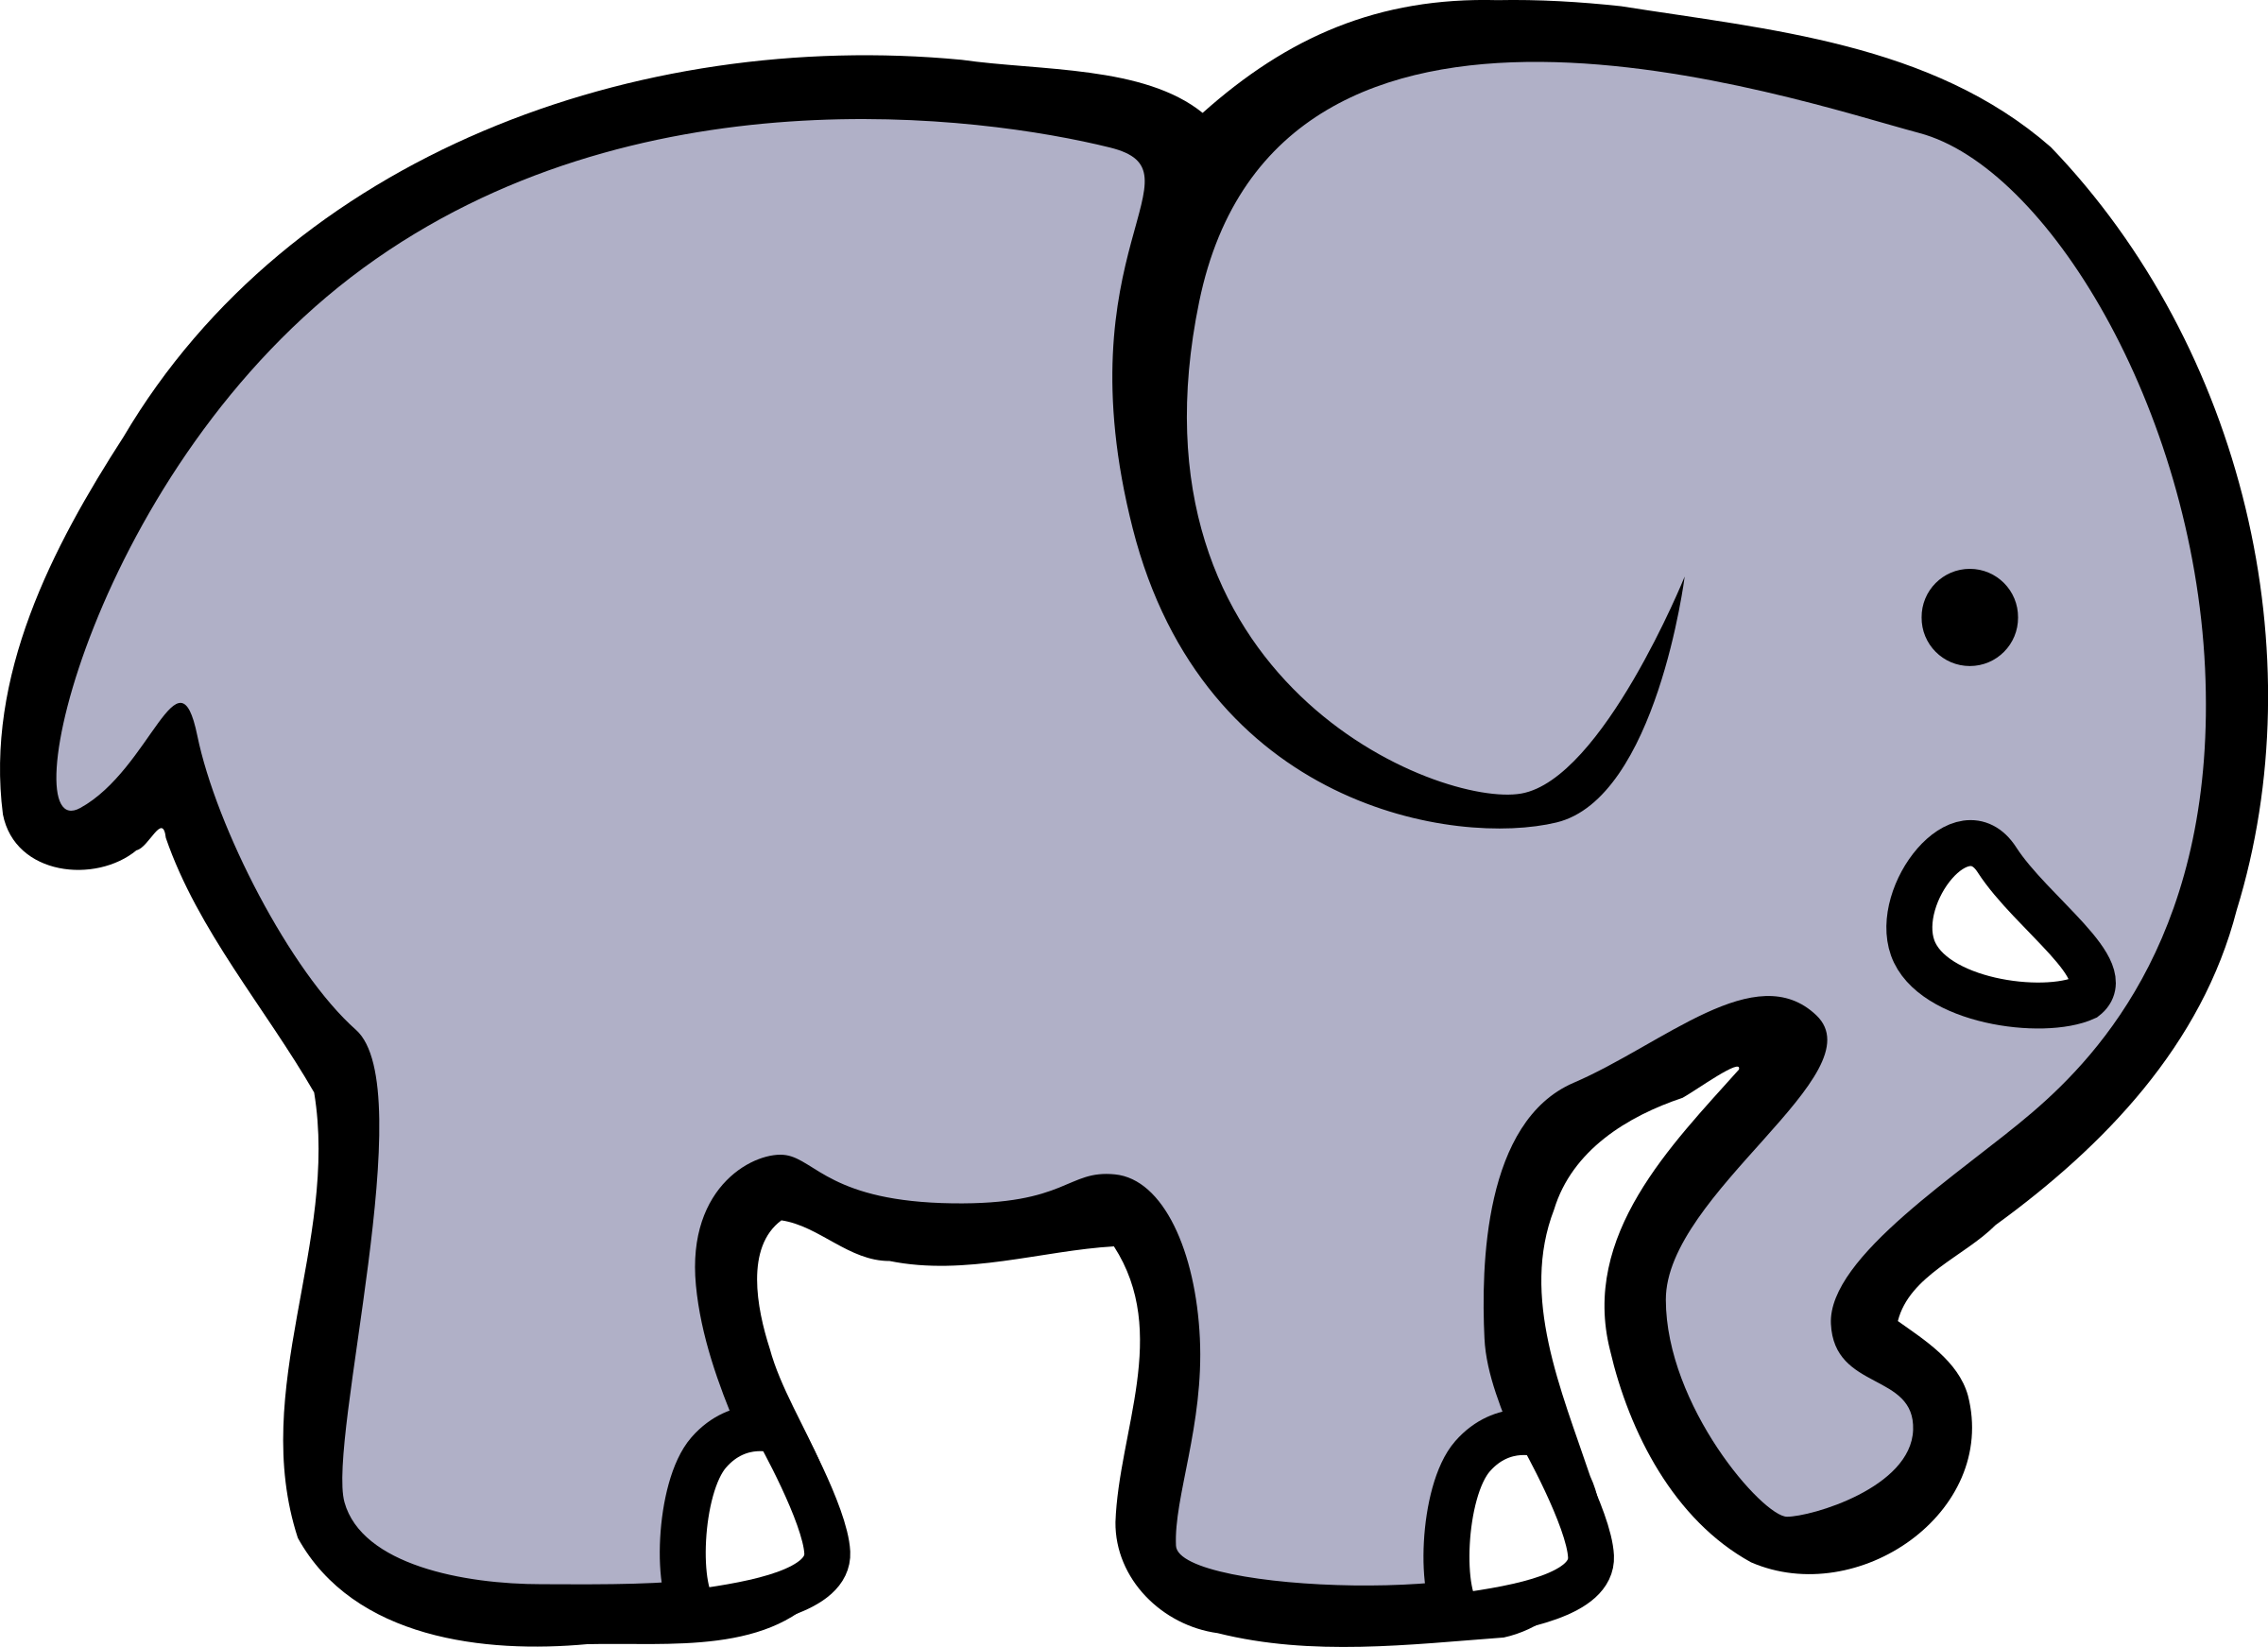 I clipart elephant. D cartoon big image